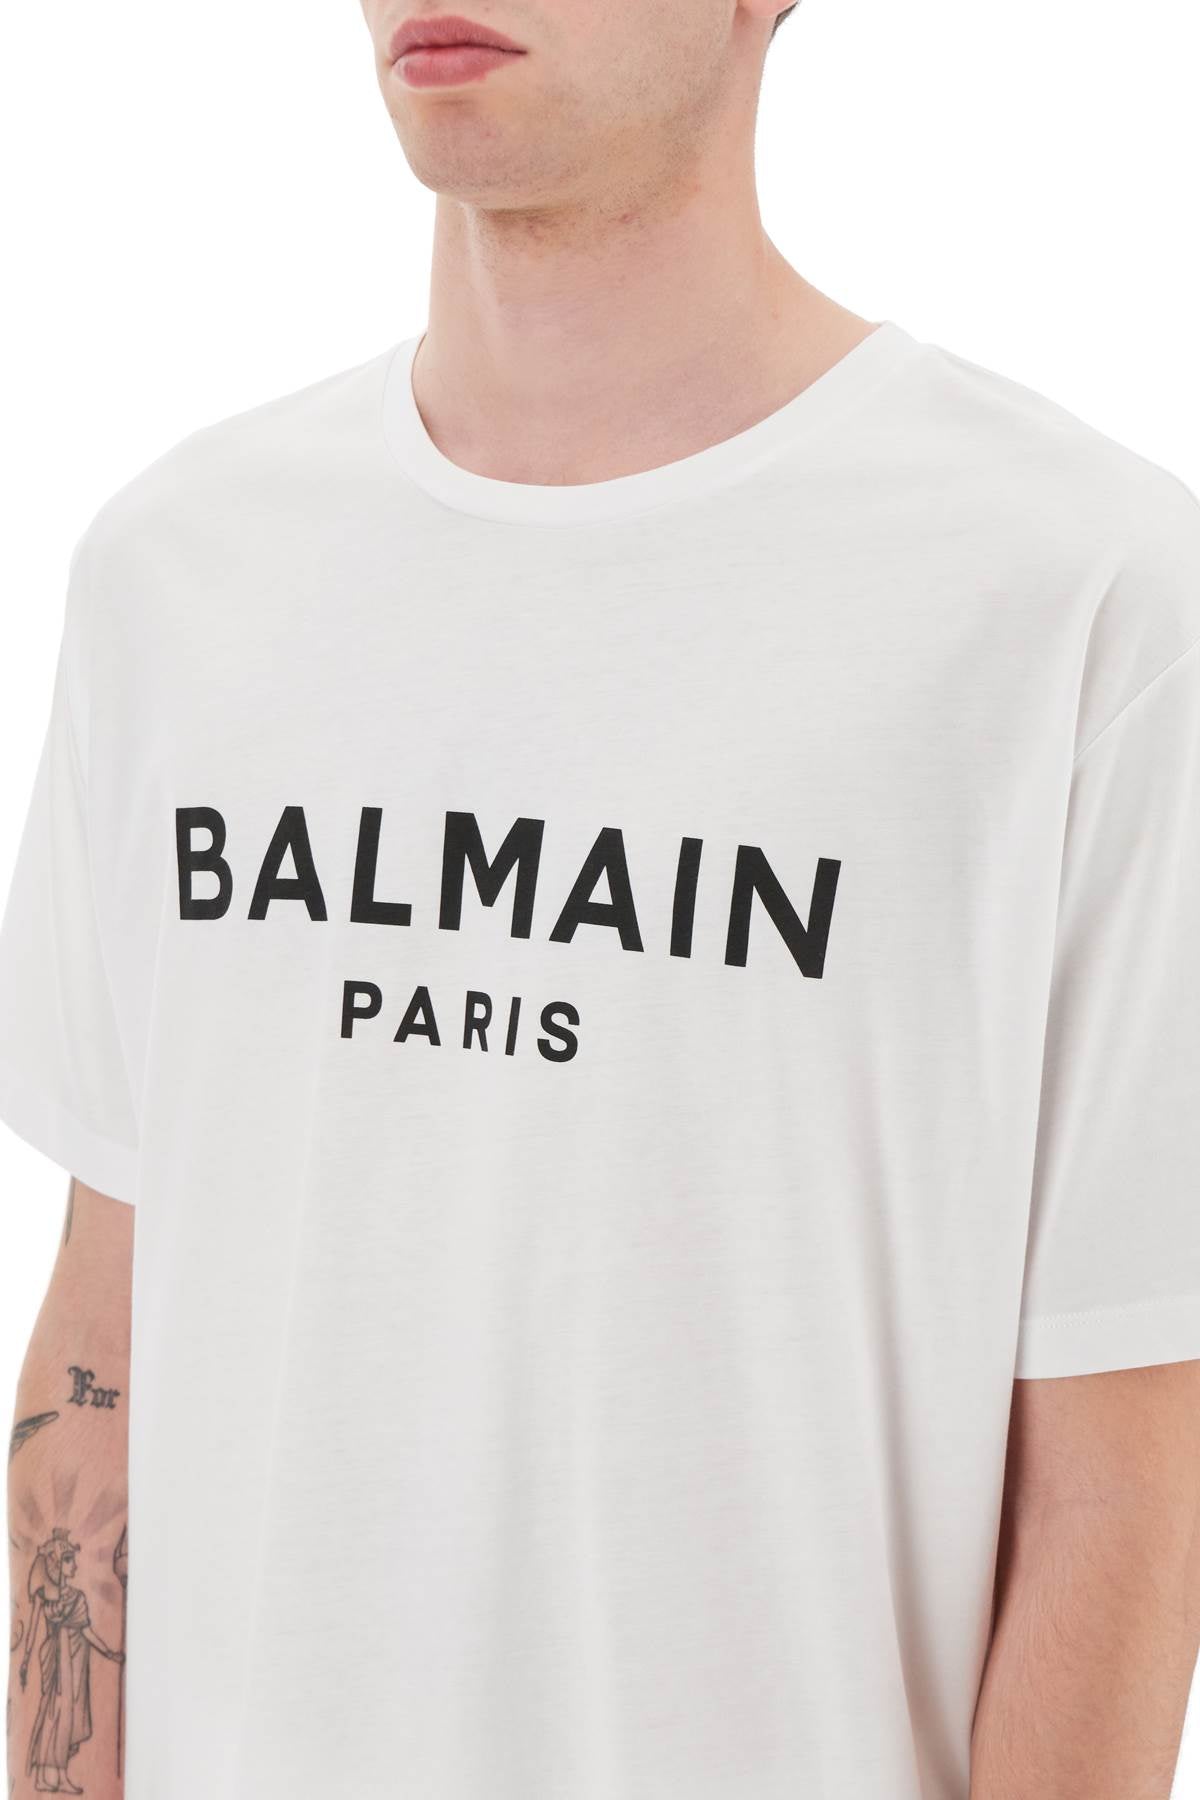 Balmain Paris T-shirt